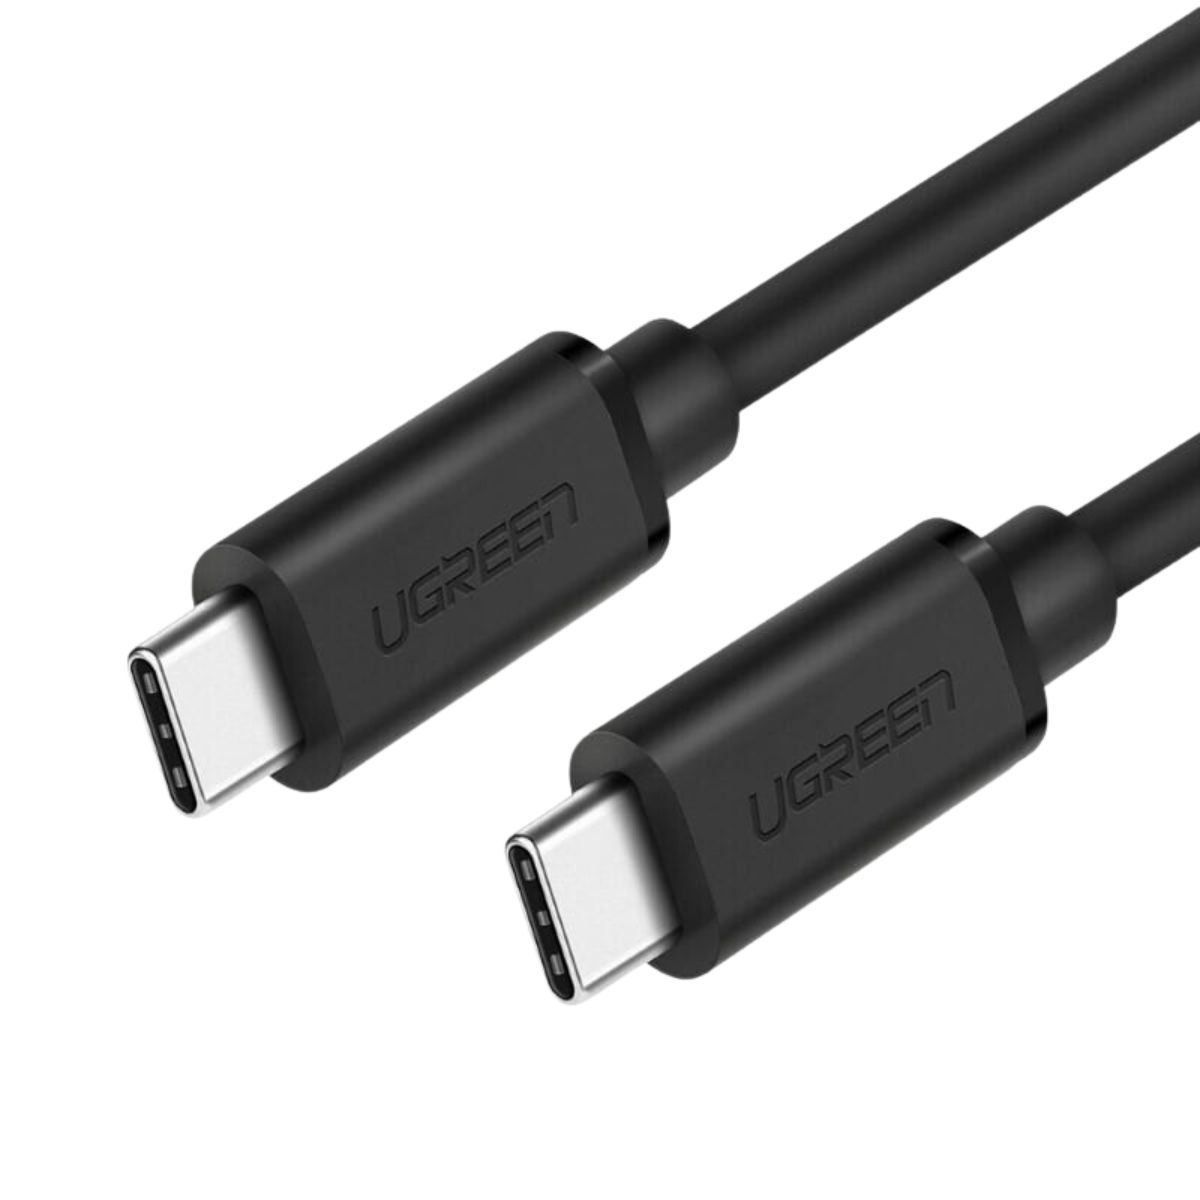 Cáp sạc dài 50cm USB type C Ugreen 50996 US286 màu đen, sạc nhanh 3A, tốc độ truyền dữ liệu 480Mbps